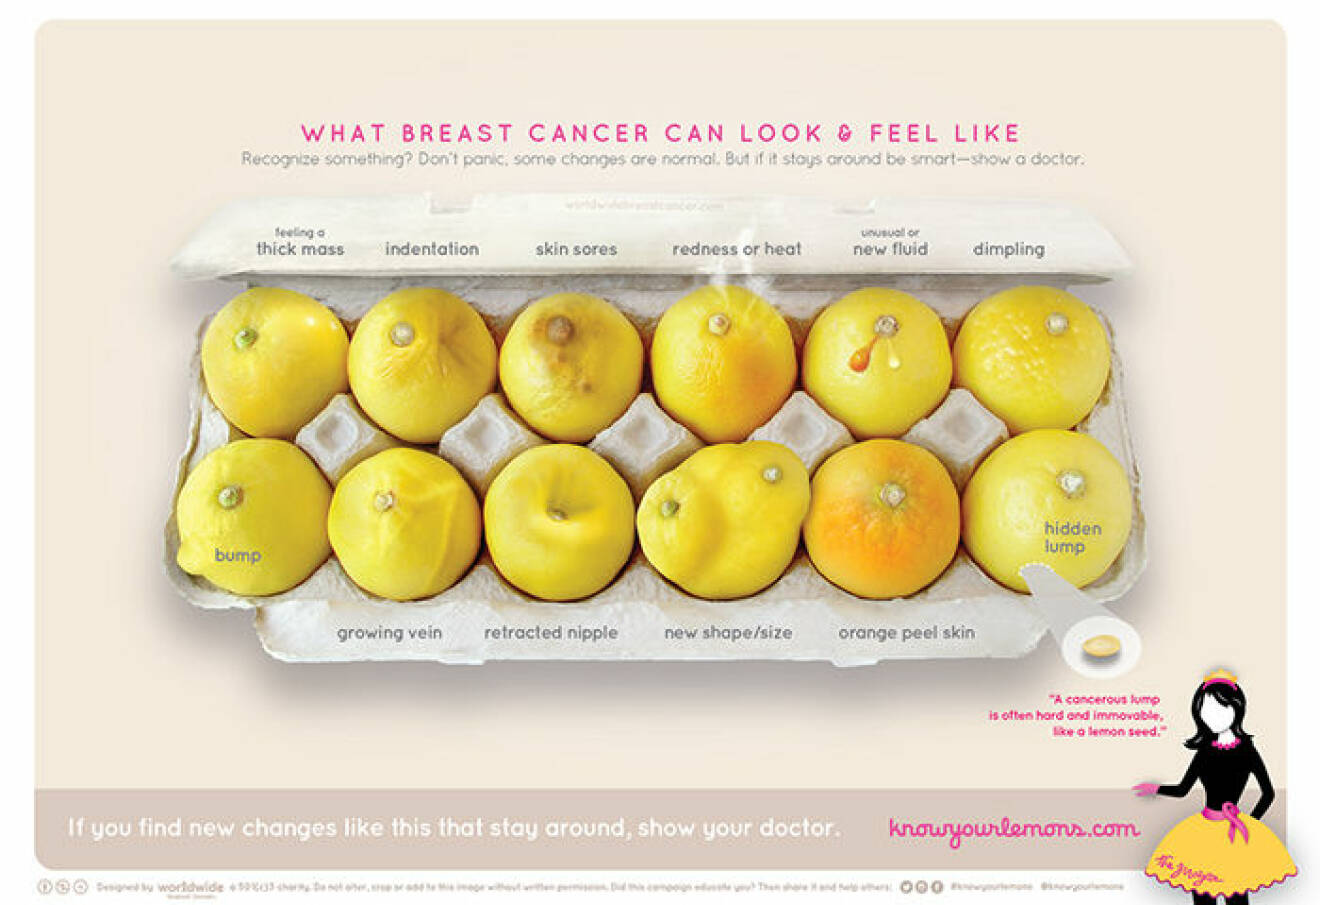 Know your lemons är en kampanj som ska lyfta fram symptom kring bröstcancer. 